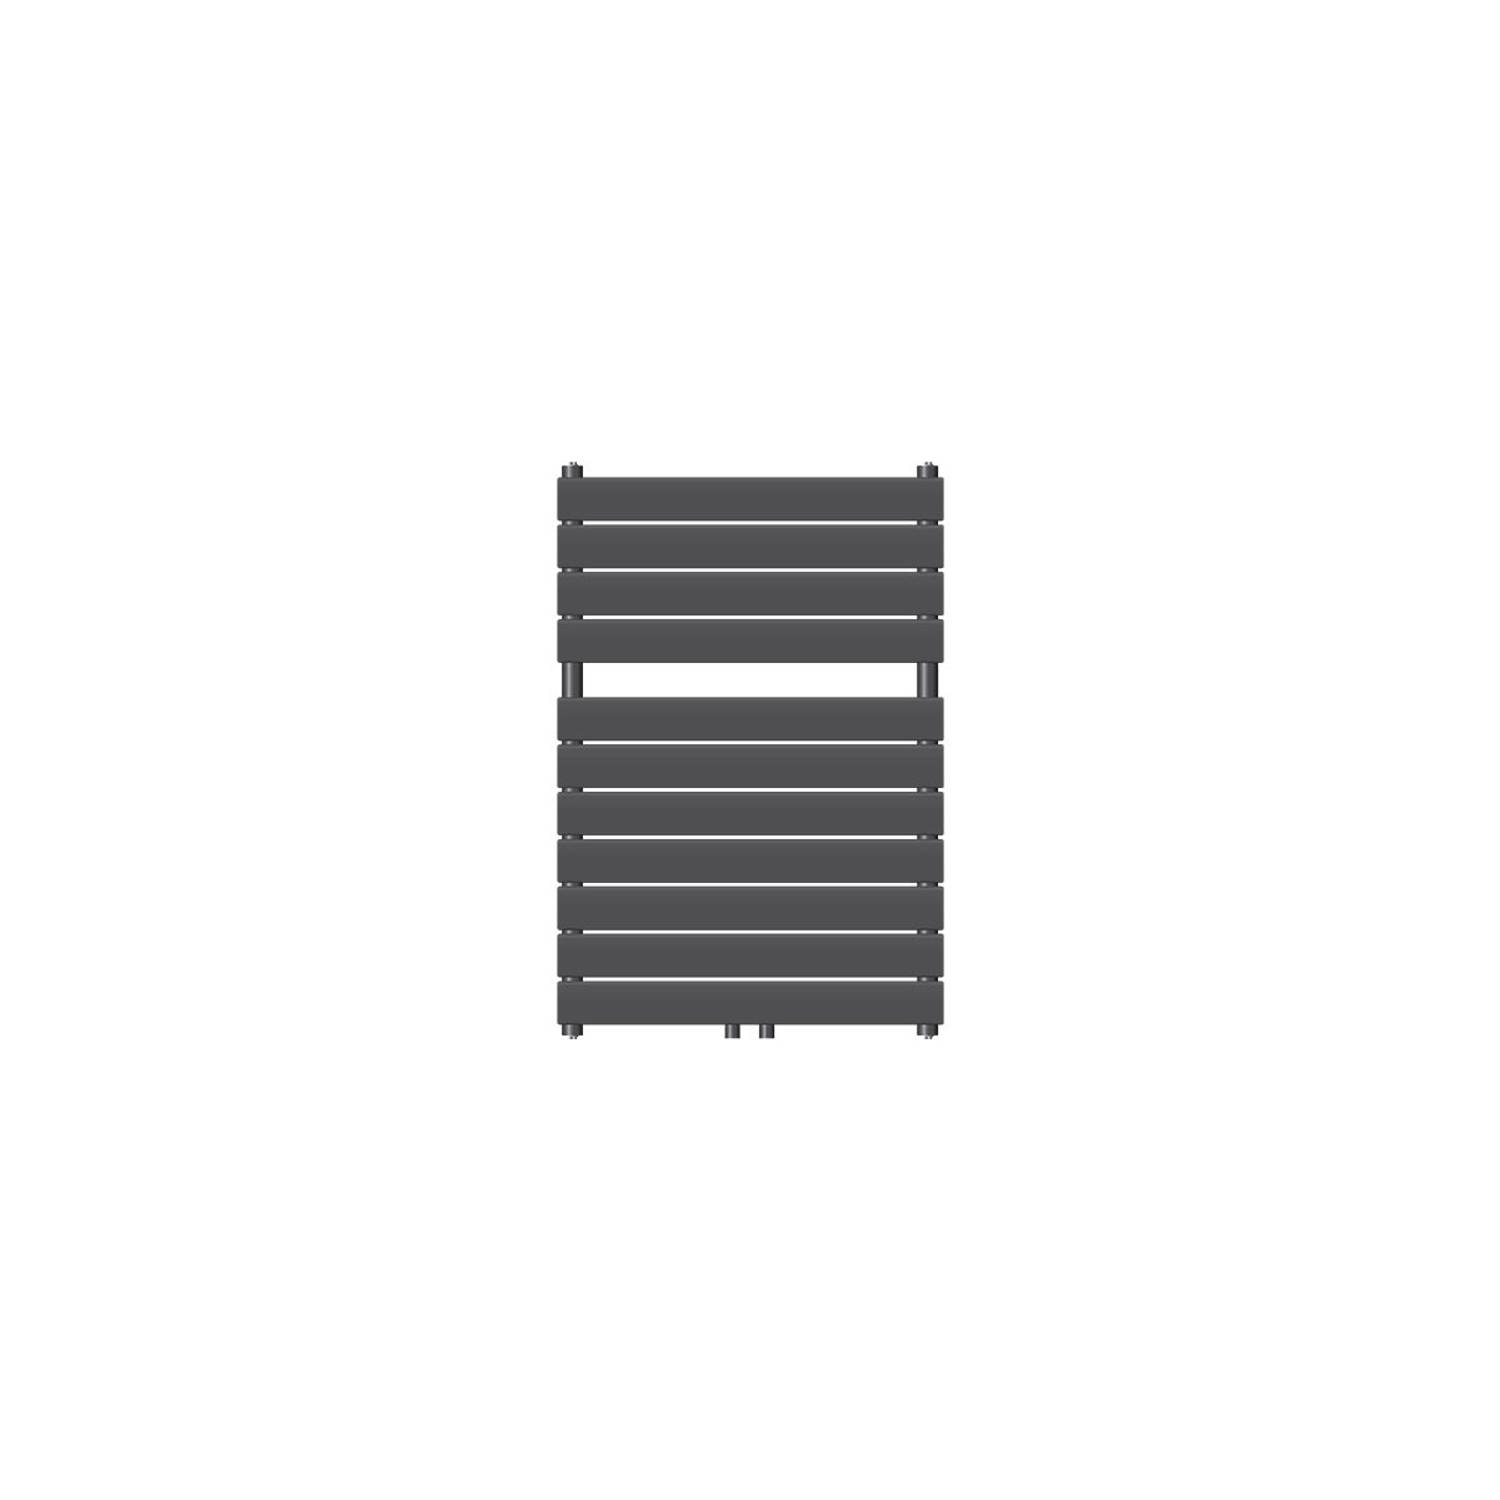 LuxeBath badkamer radiator Stoom 600x800 mm, antraciet, middenaansluiting 50 mm, éénlaags, vlak, verticaal, design radiator handdoekverwarmer handdoekdroger handdoekradiator paneel